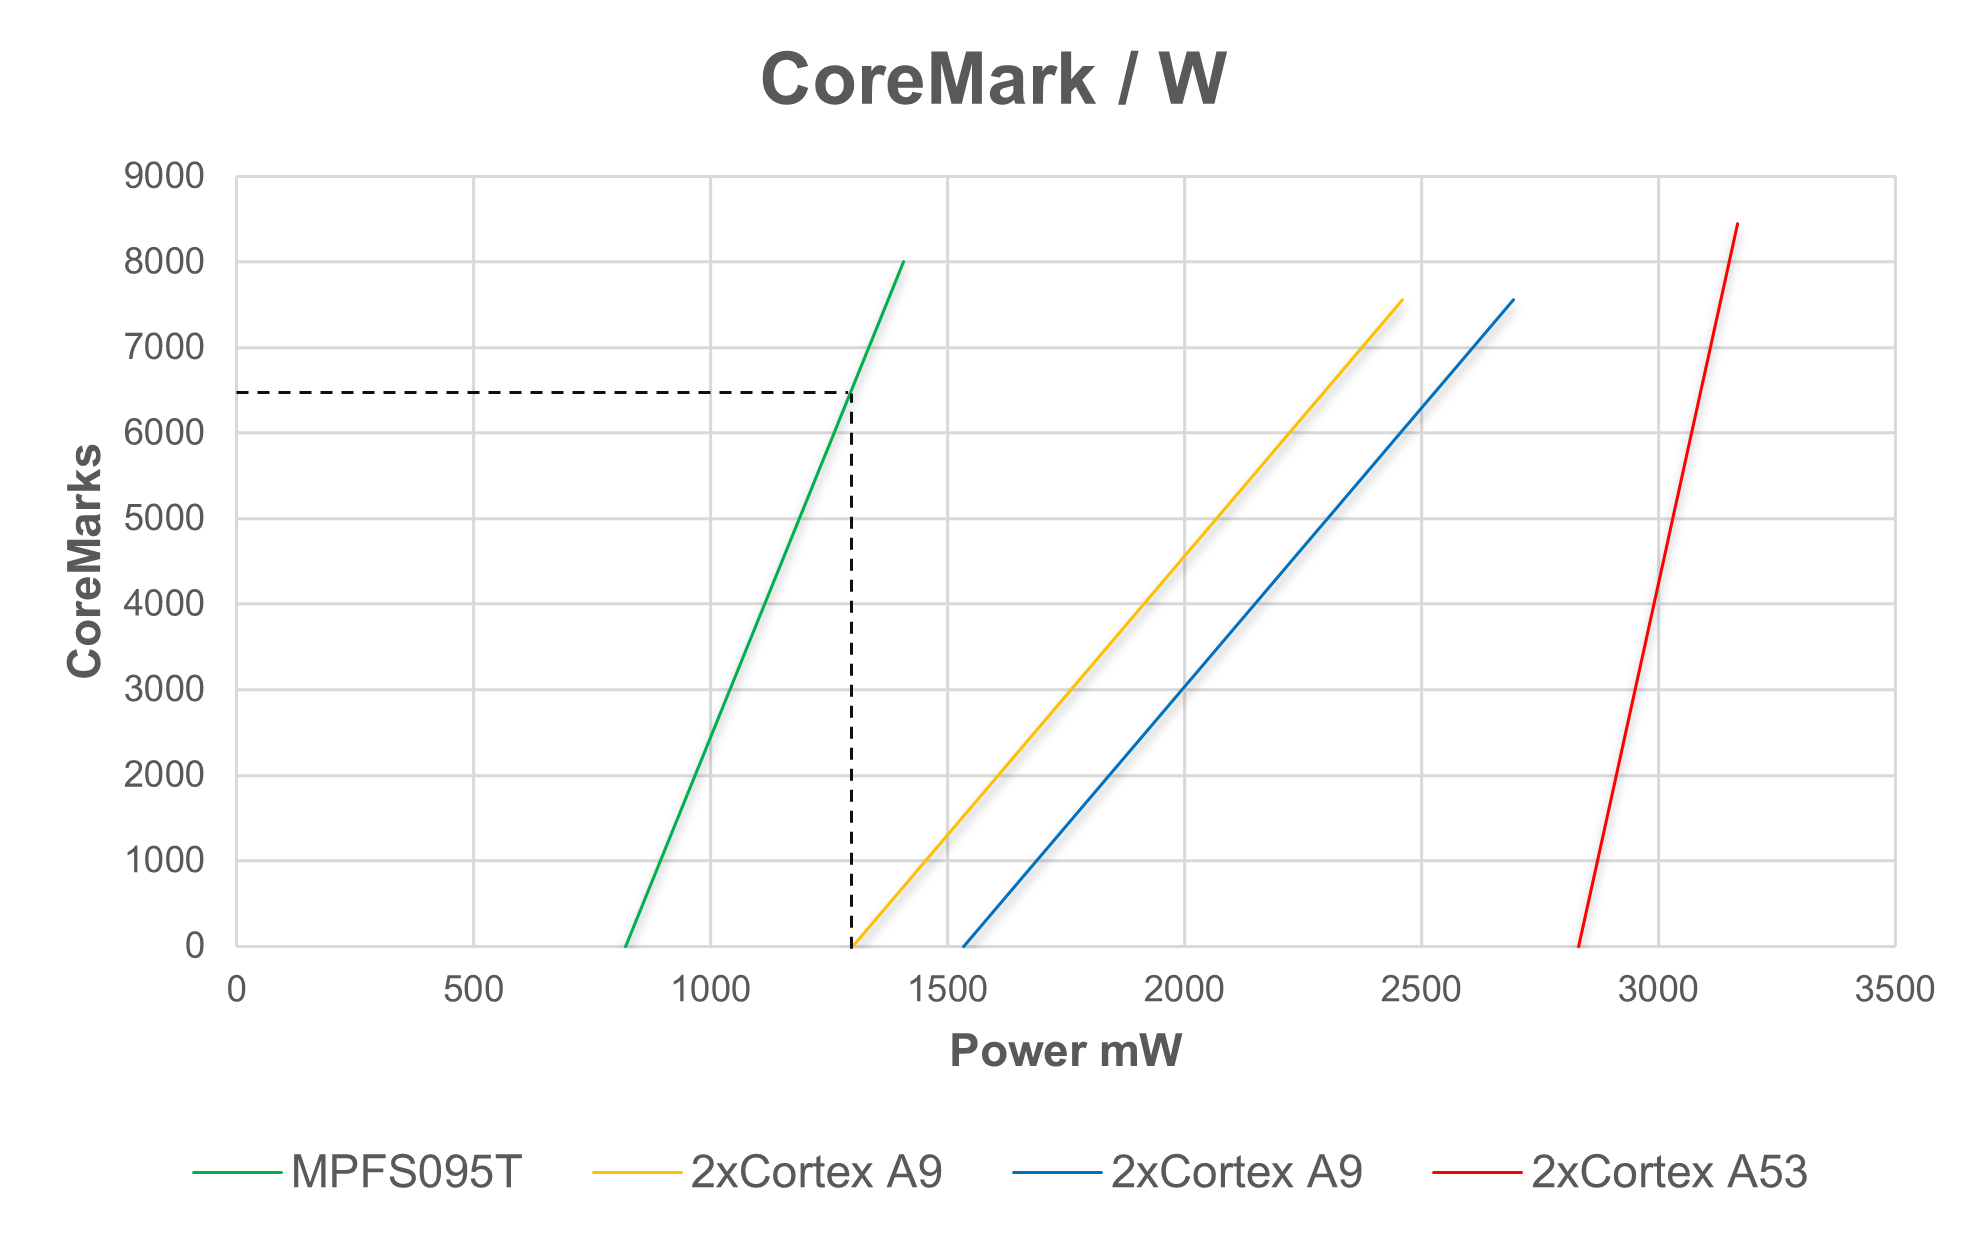 CoreMark per Watt for PolarFire SoC vs Competition